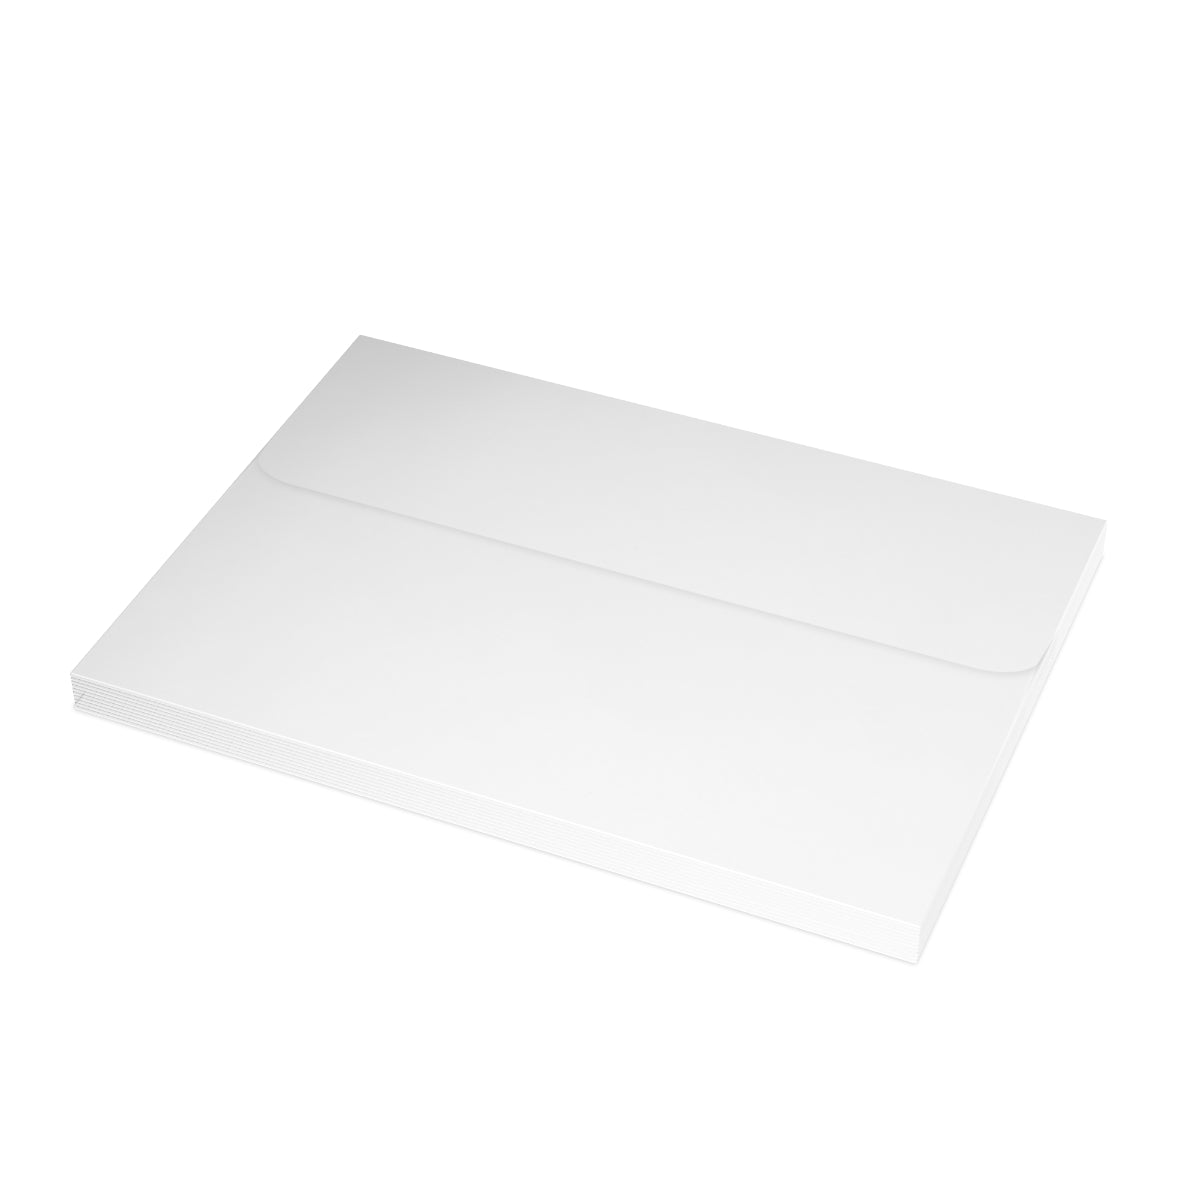 Paris Folded Matte Notecards + Envelopes (10pcs)